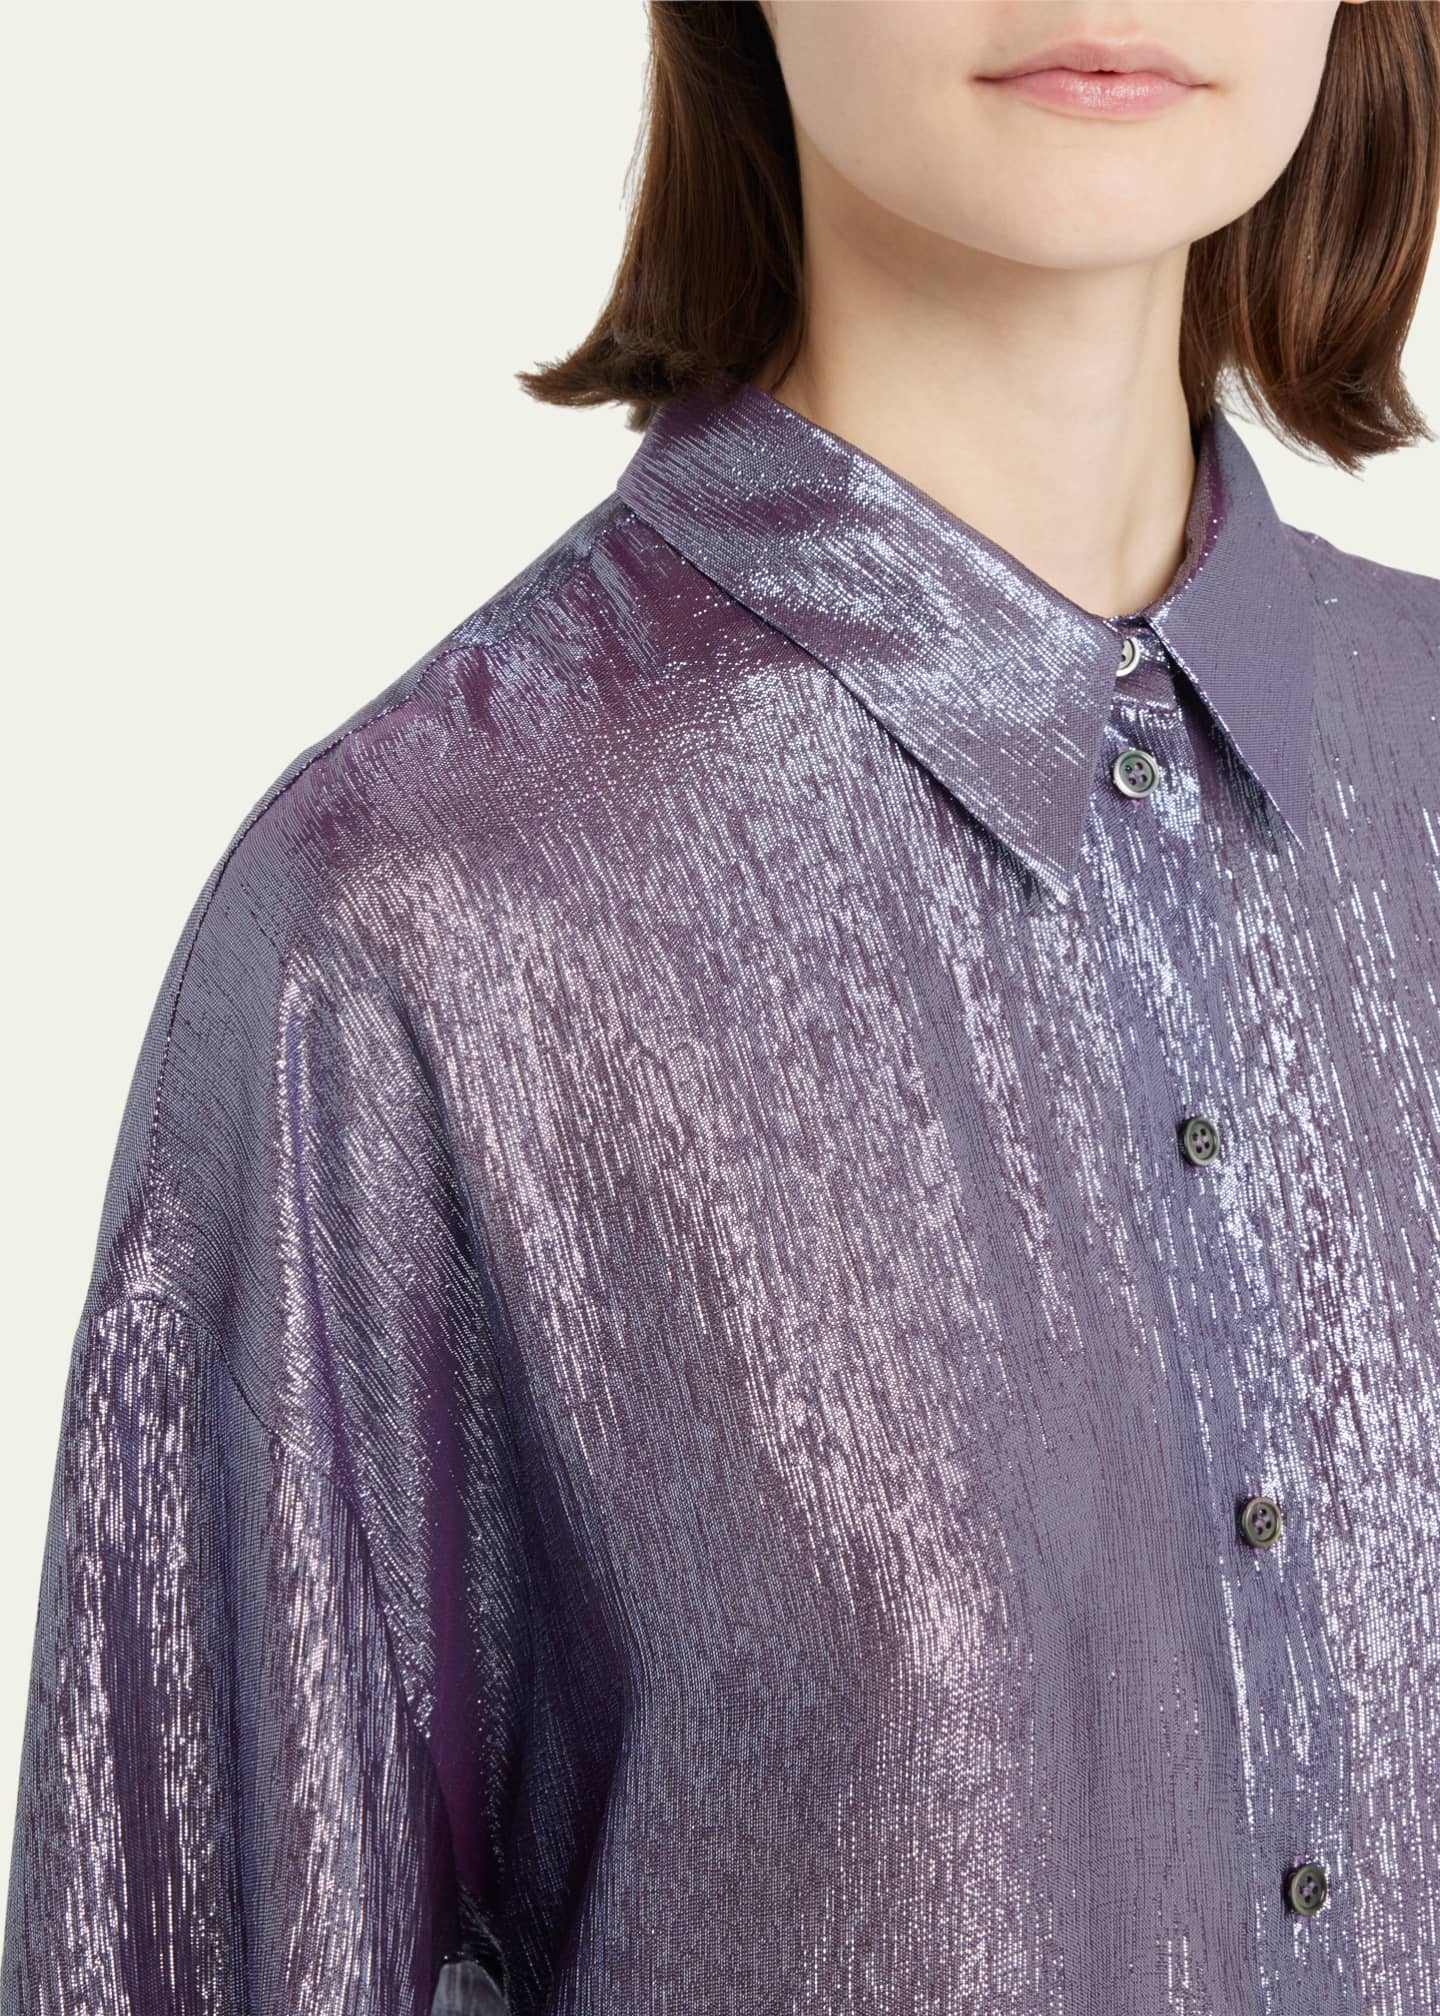 INDRESS Metallic Button-Down Silk Shirt - Goodman